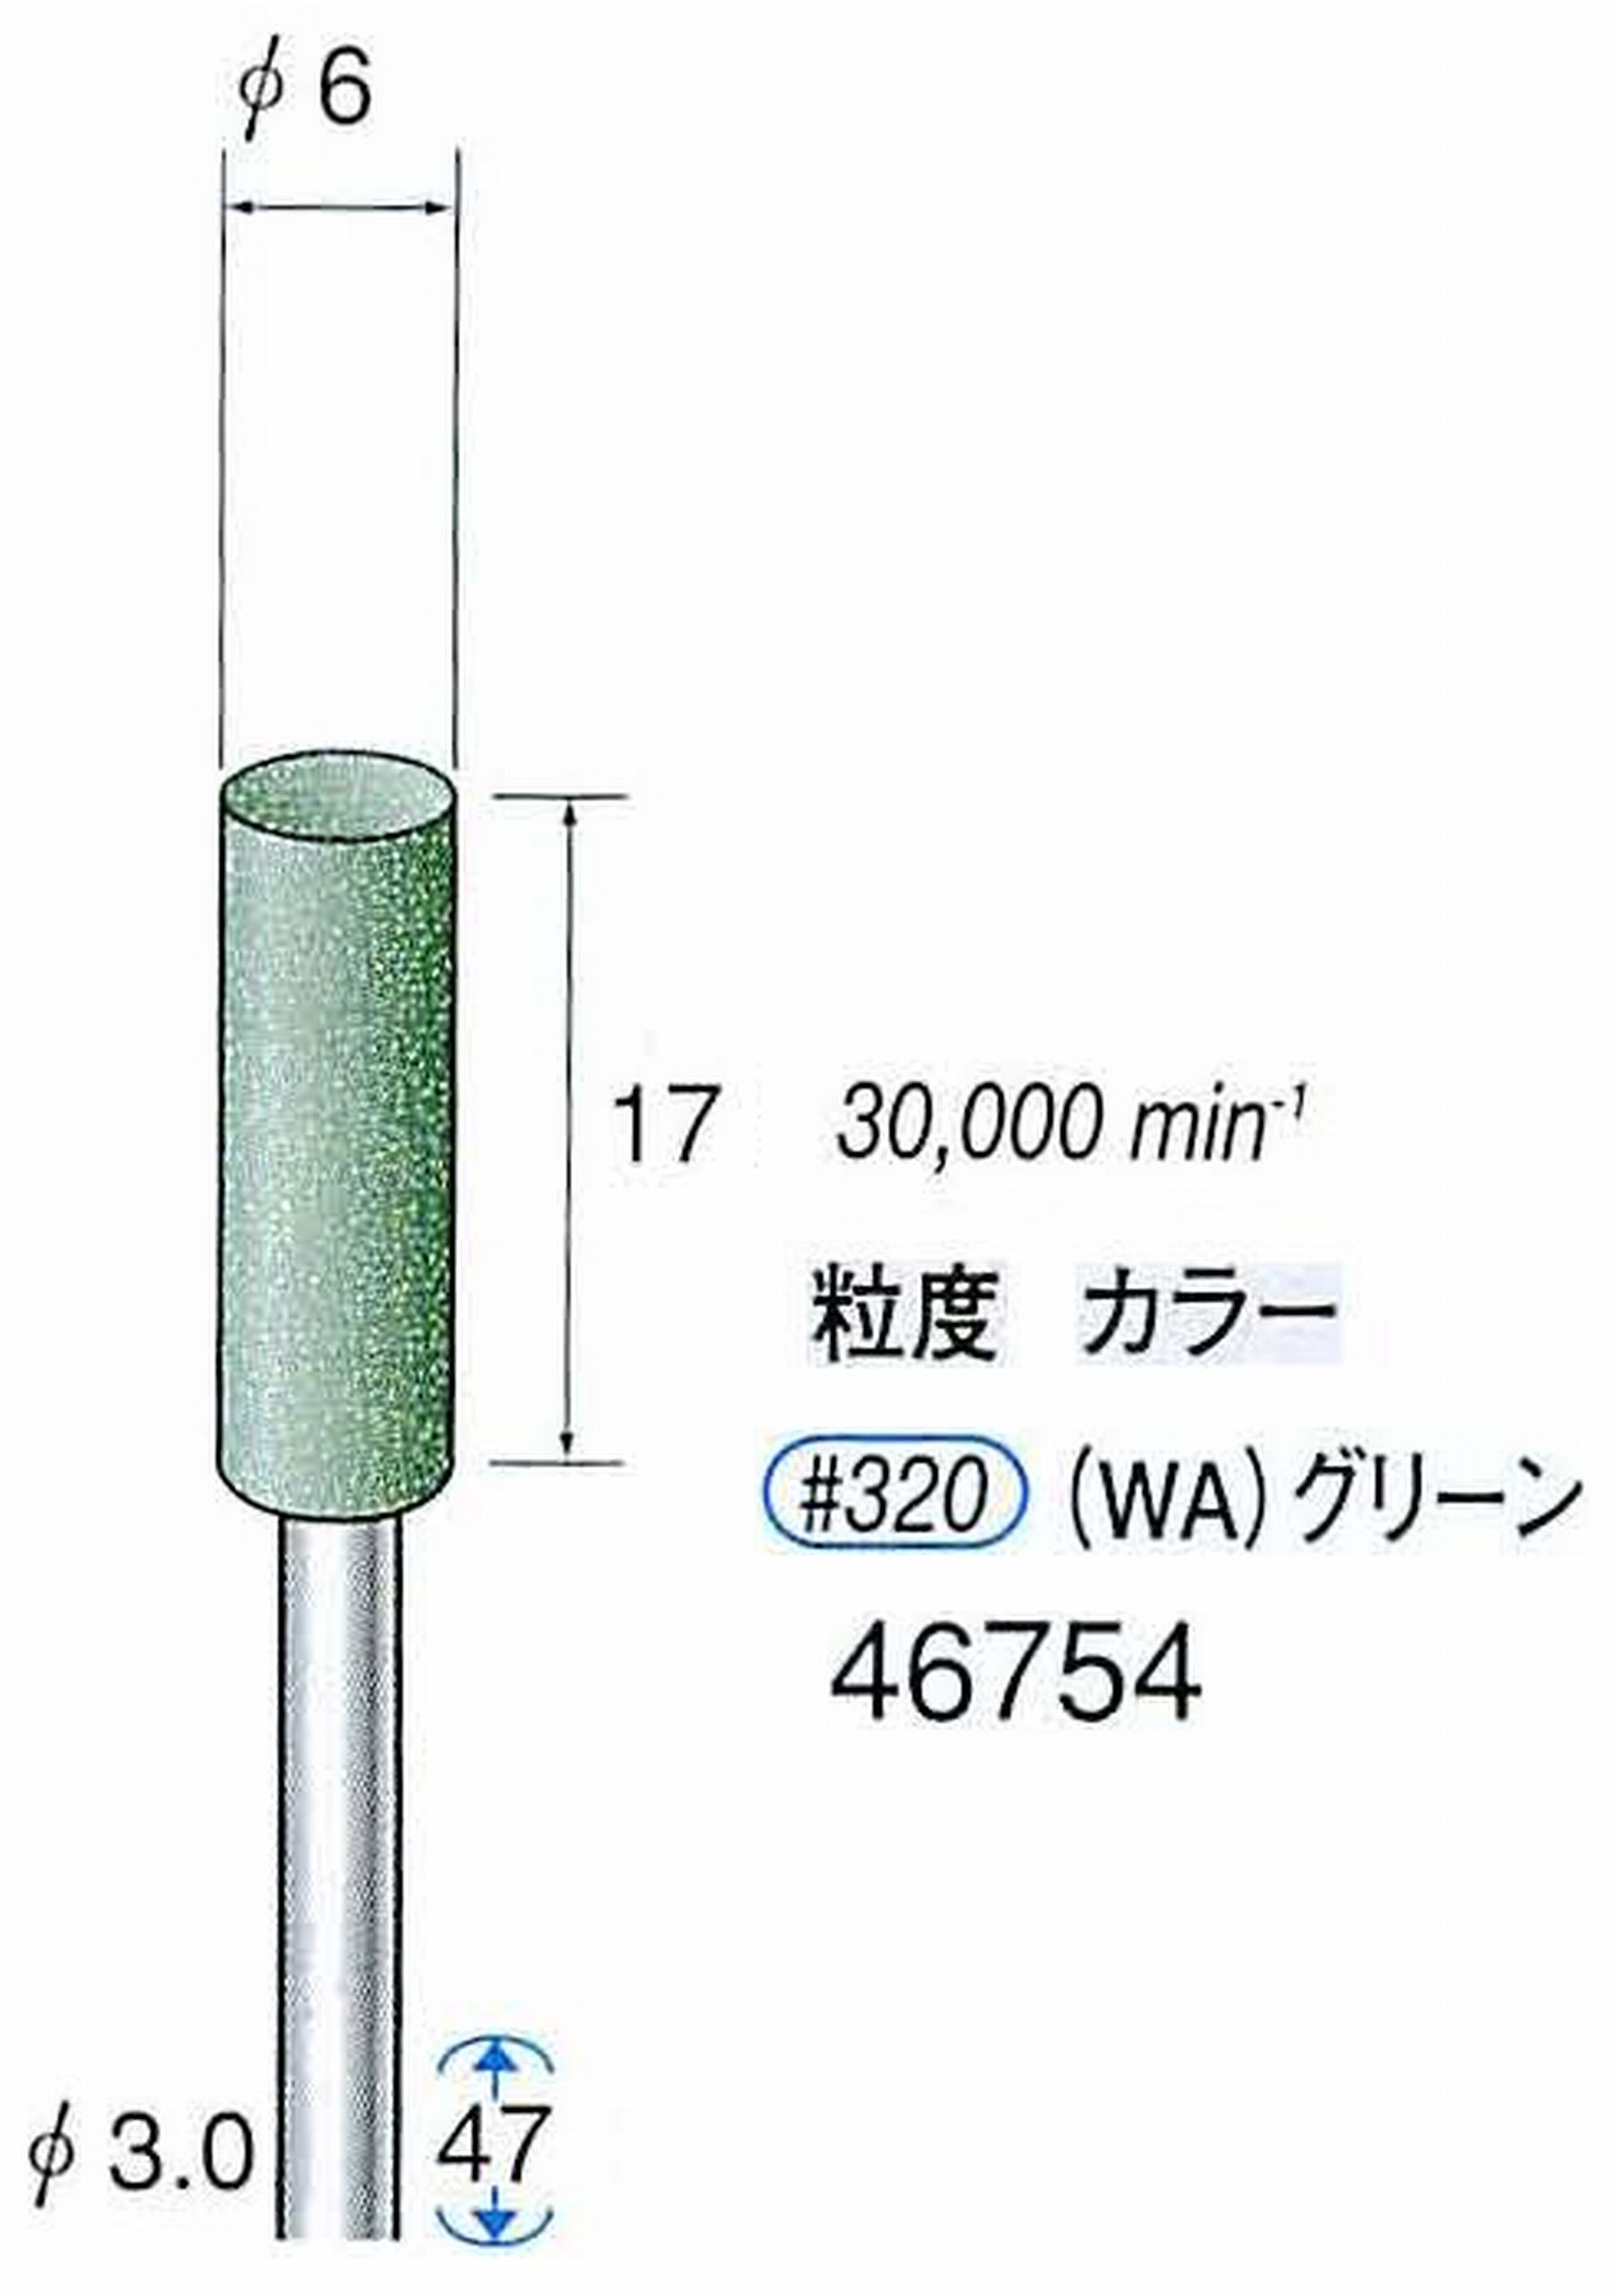 ナカニシ/NAKANISHI ゴム砥石 グリーンポリッシャー(WA砥粒)ゴム質の硬さ：ミディアム 軸径(シャンク) φ3.0mm 46754